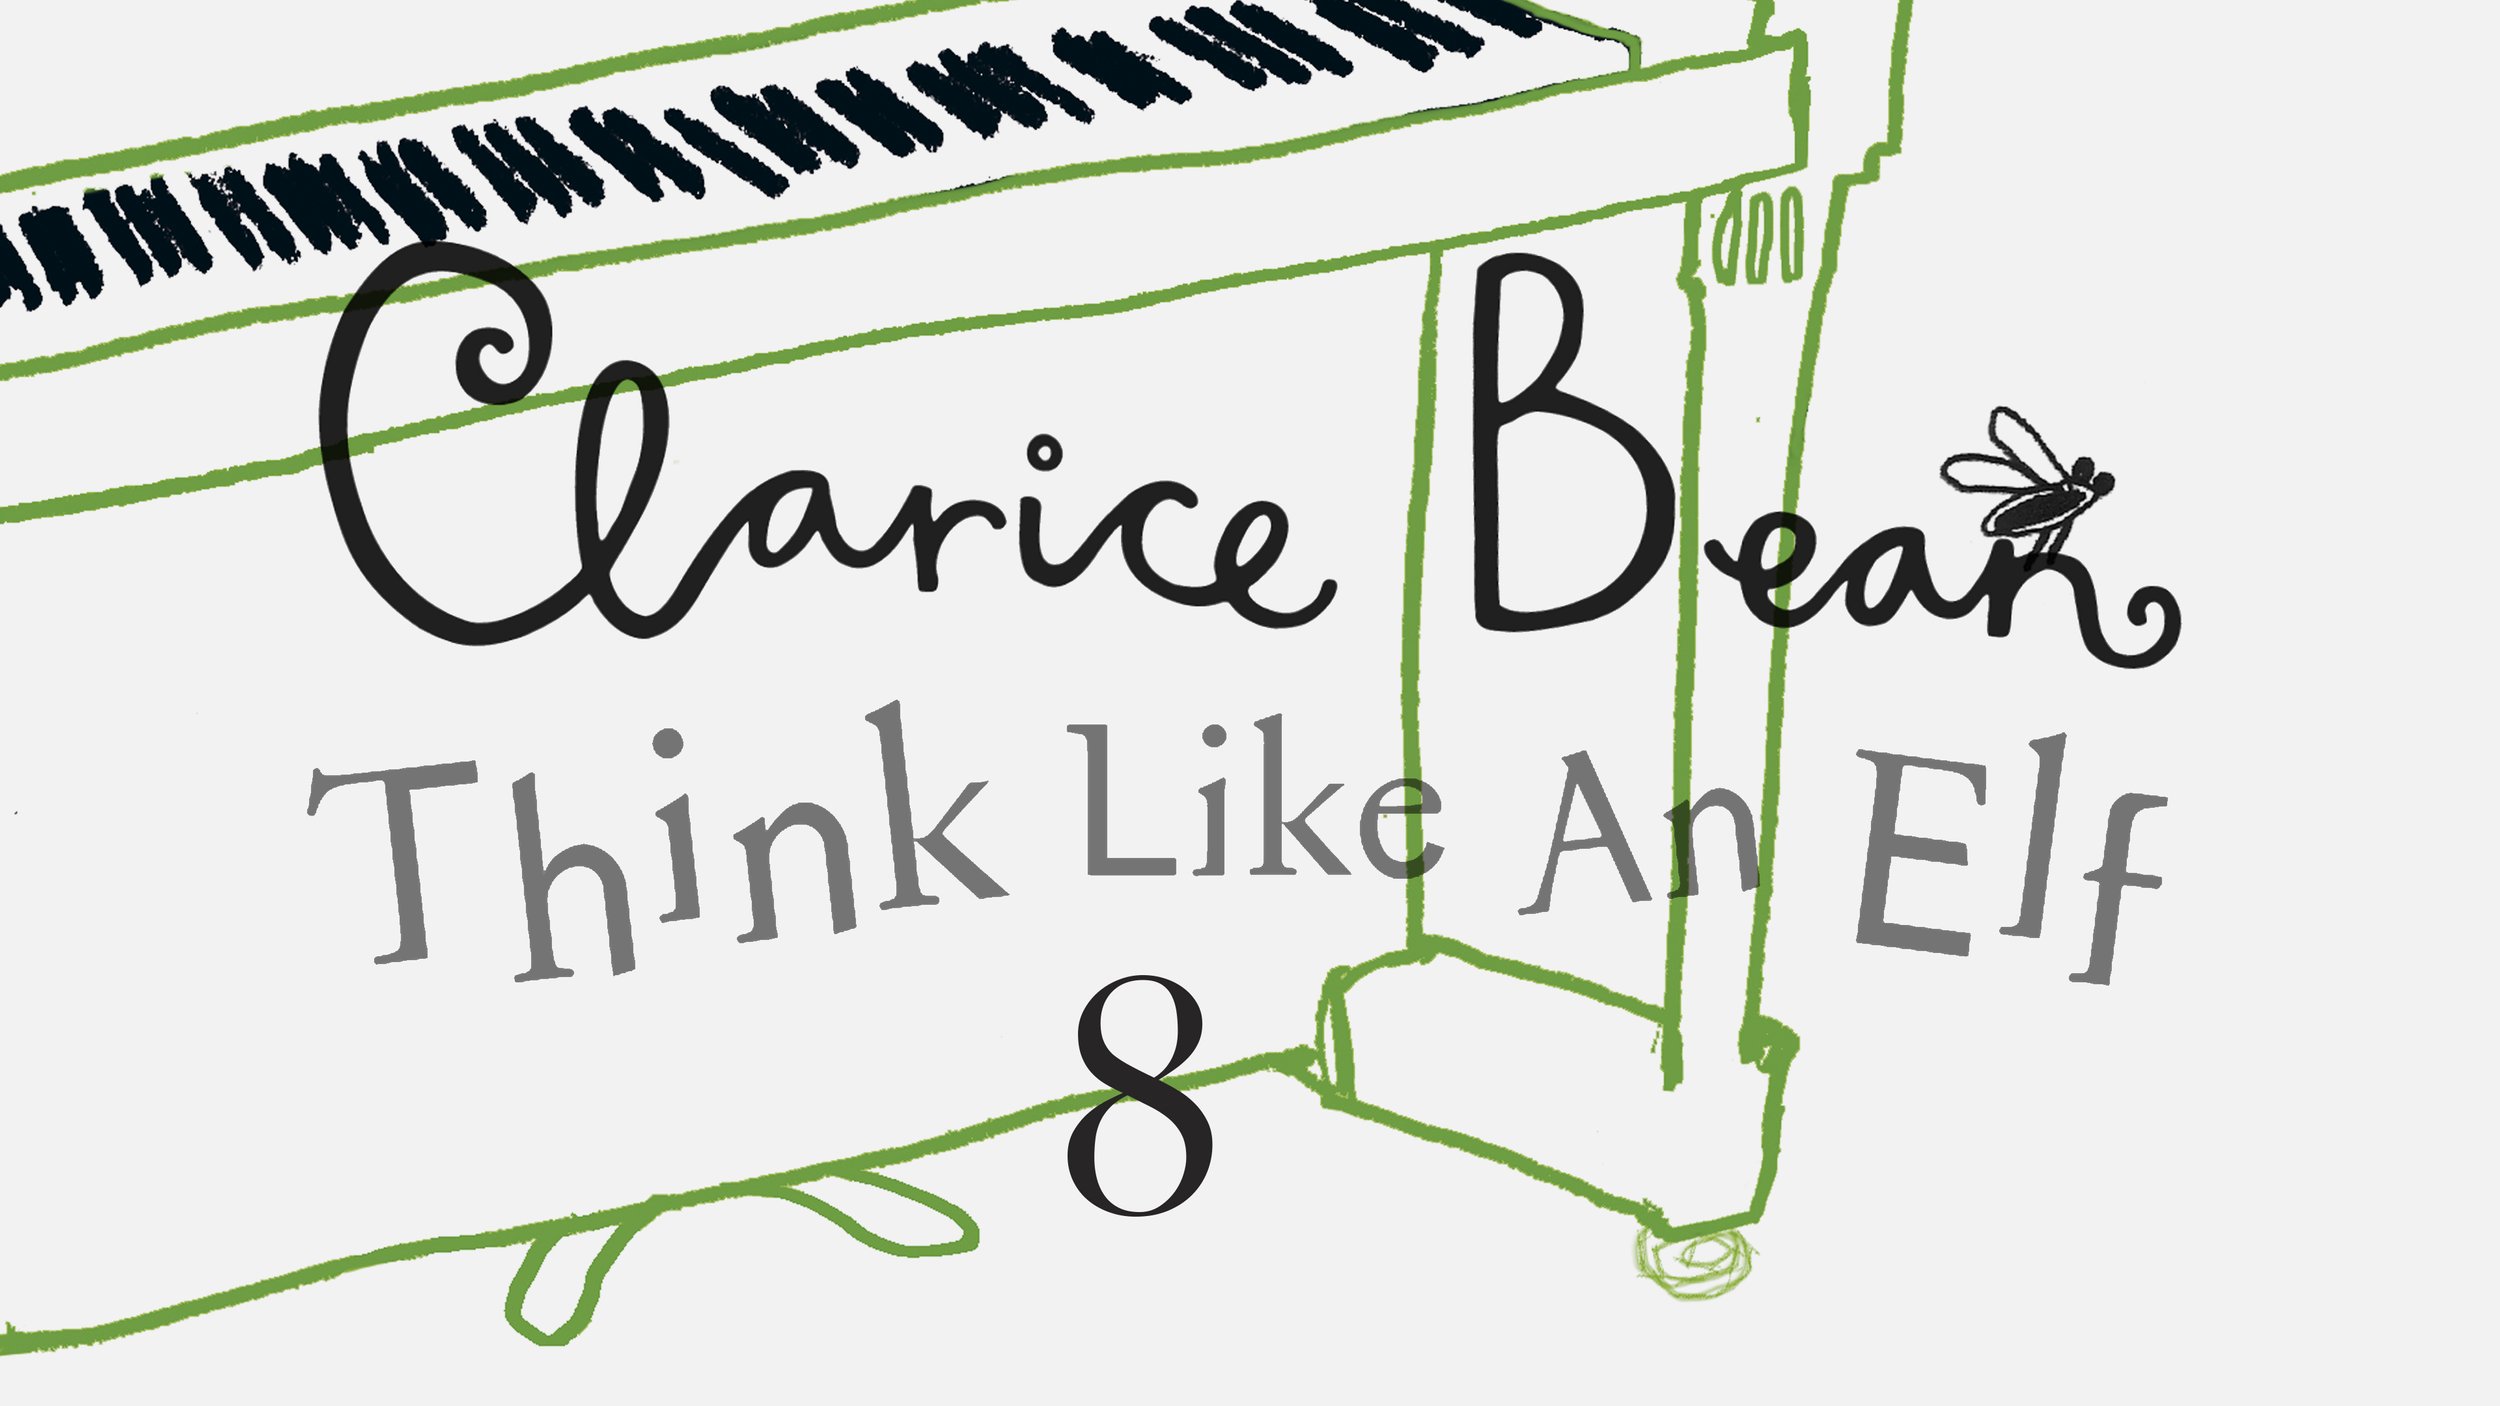 8: The Piano